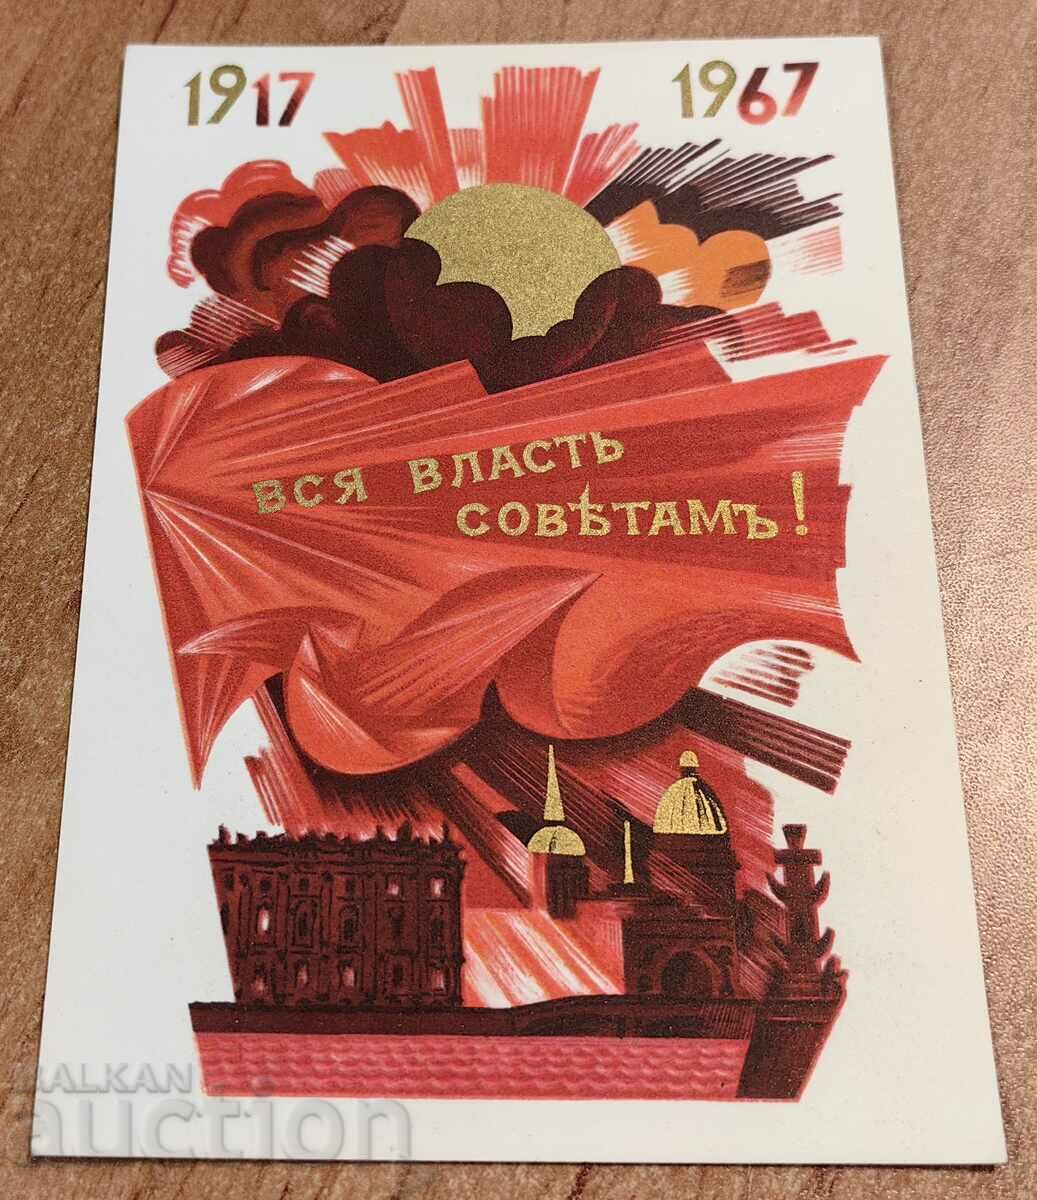 1917-1967 CARTE POȘTALĂ RARĂ DE LA URSS SOCIAL SOVIETICĂ TIMPURIE